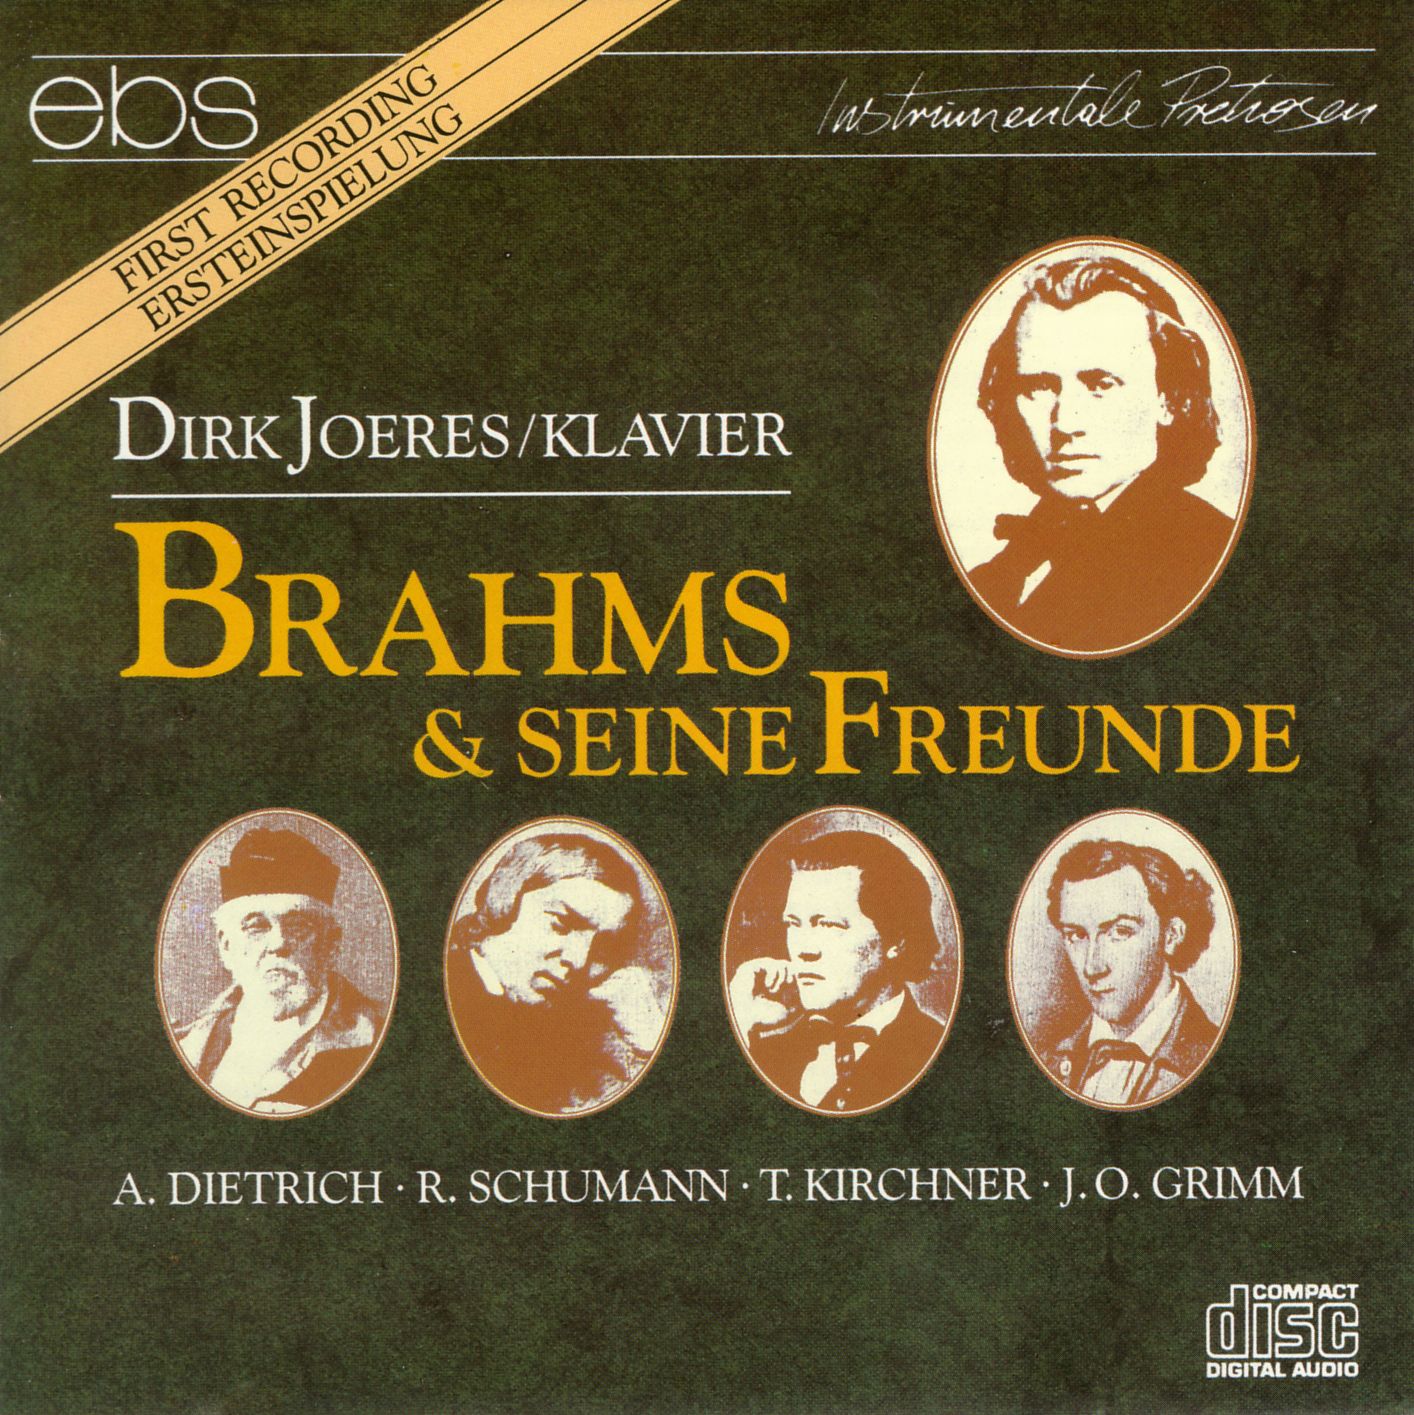 Brahms & seine Freunde